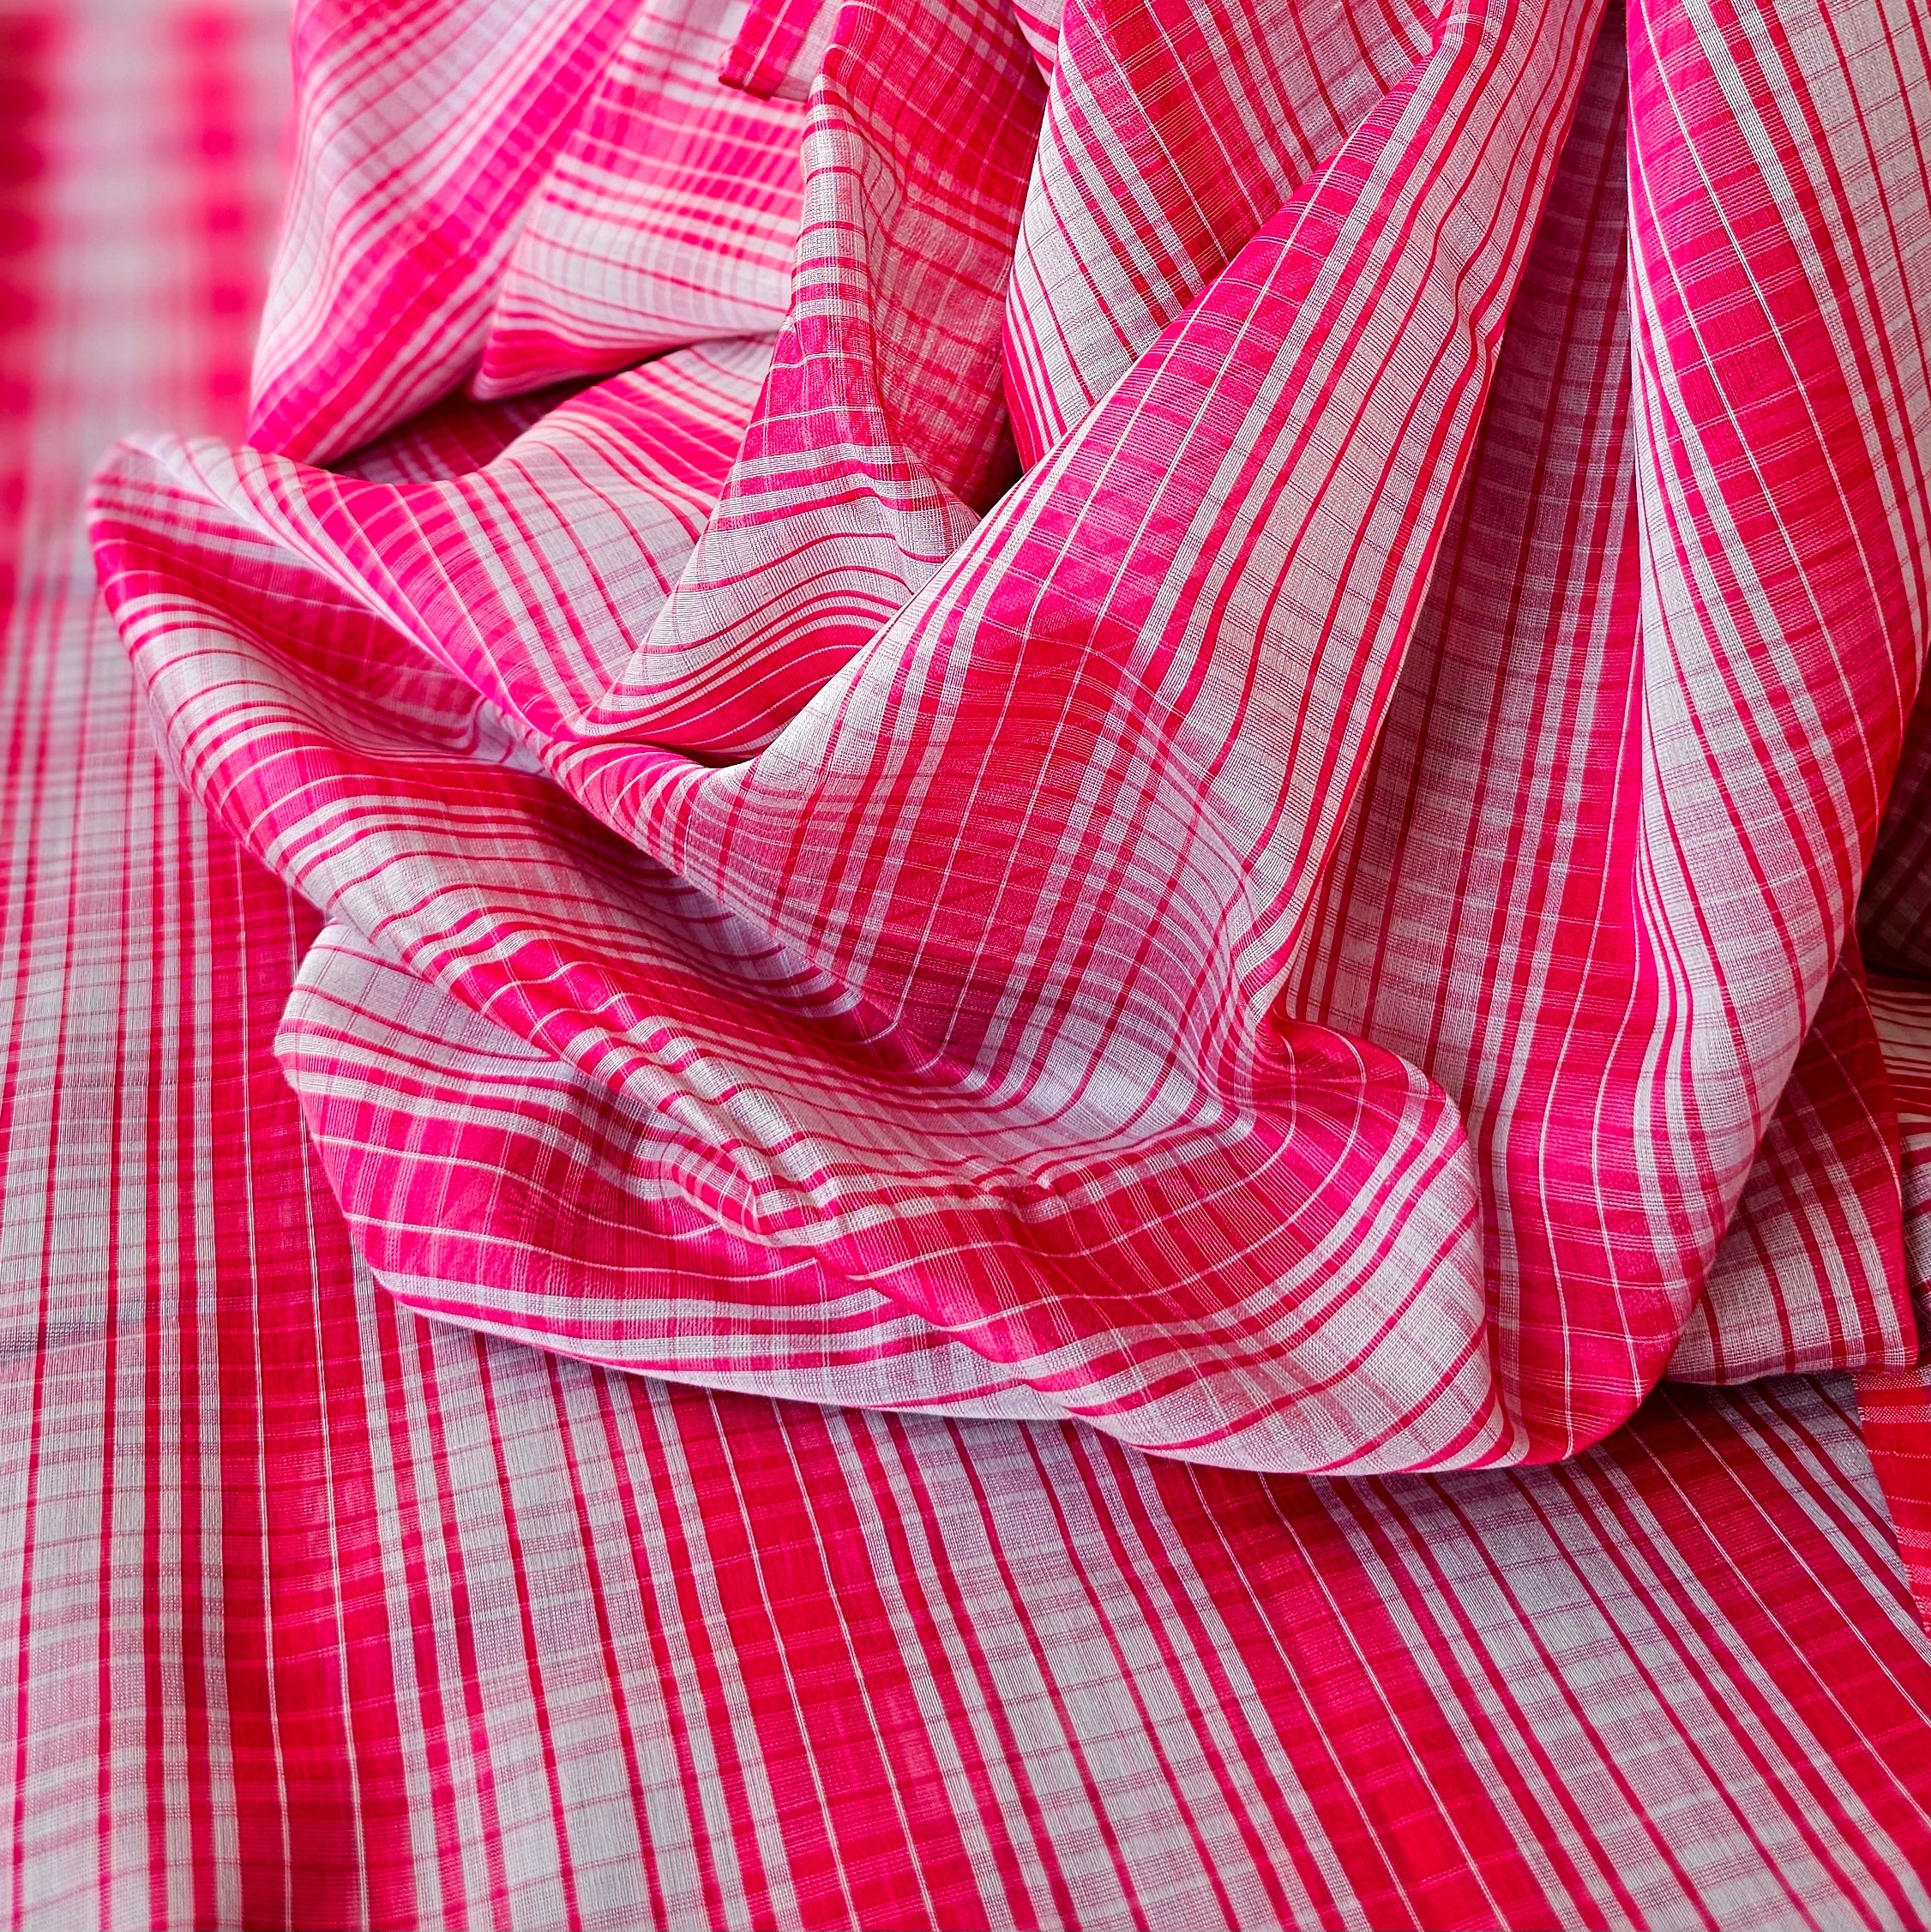 Grey and Pink Checks running Fabrics.